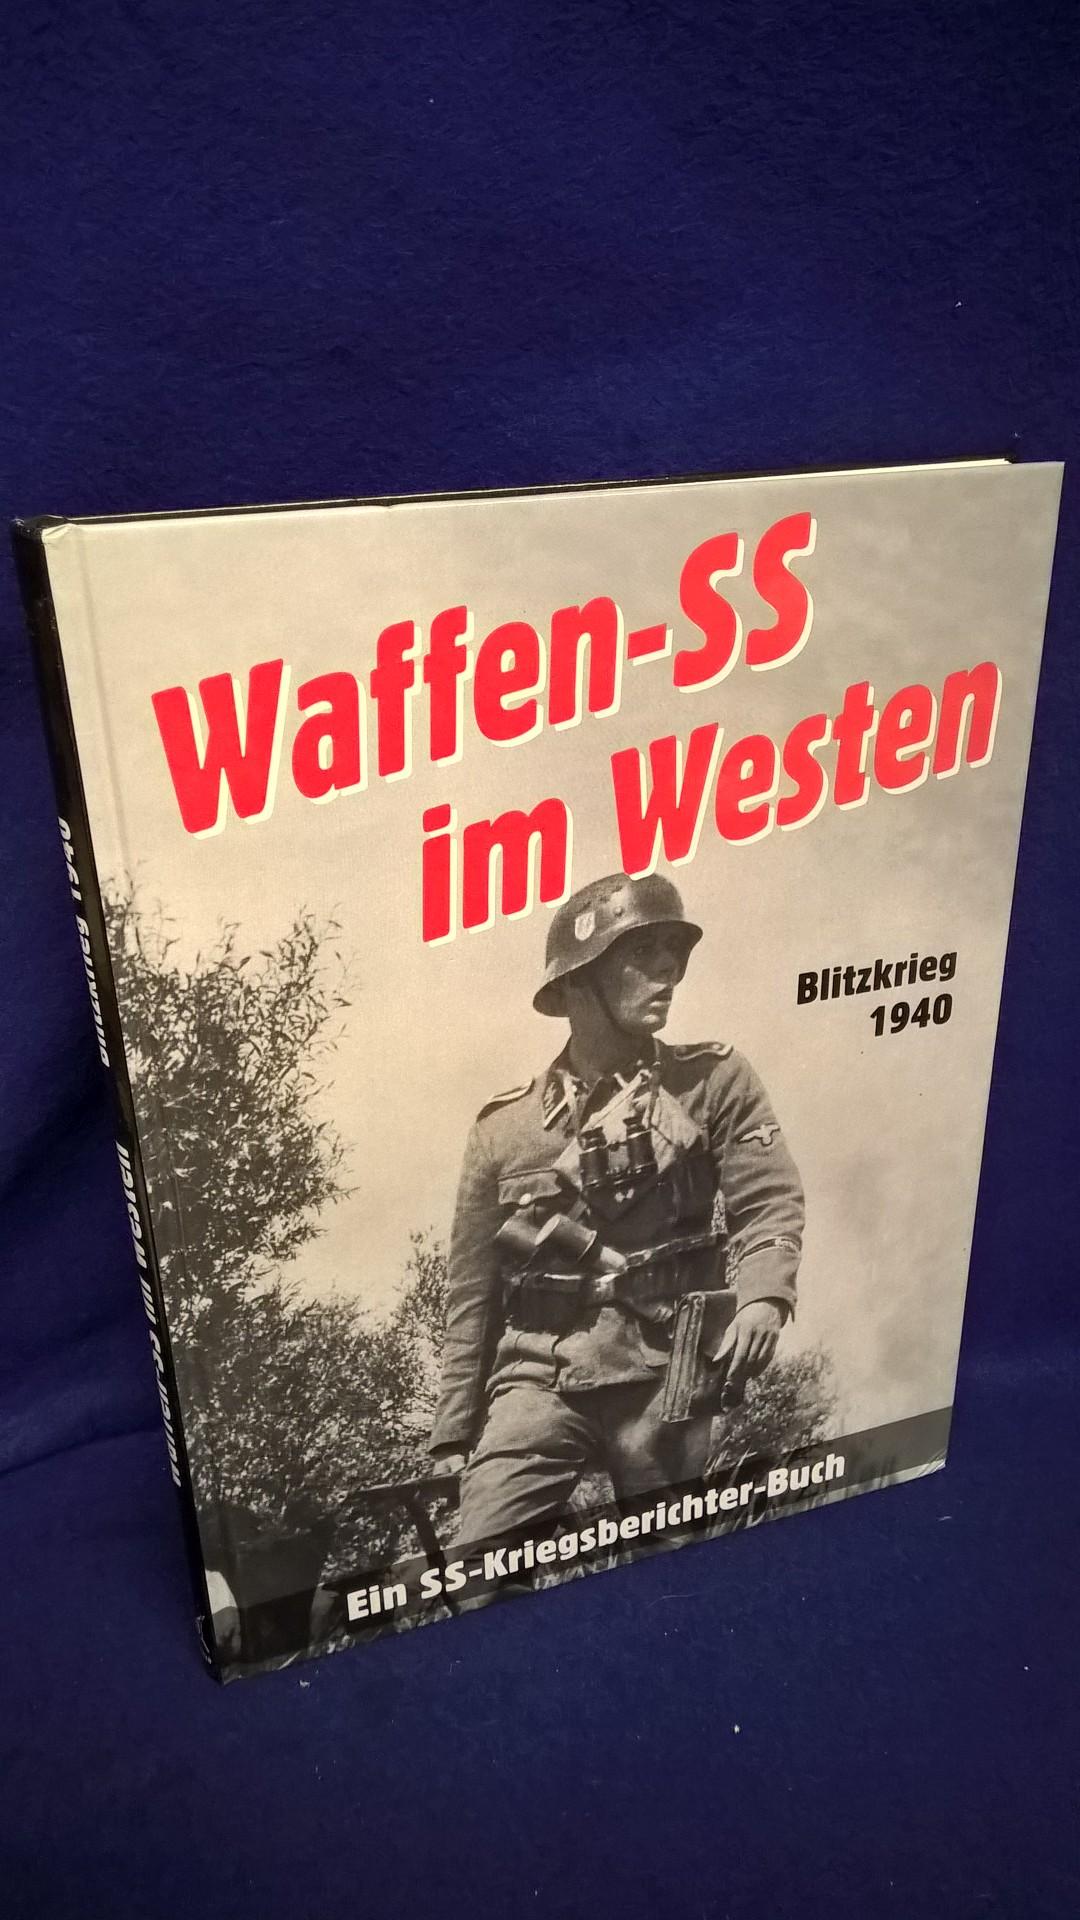 Waffen-SS im Westen. Blitzkrieg 1940. Ein SS-Kriegsberichter-Buch.